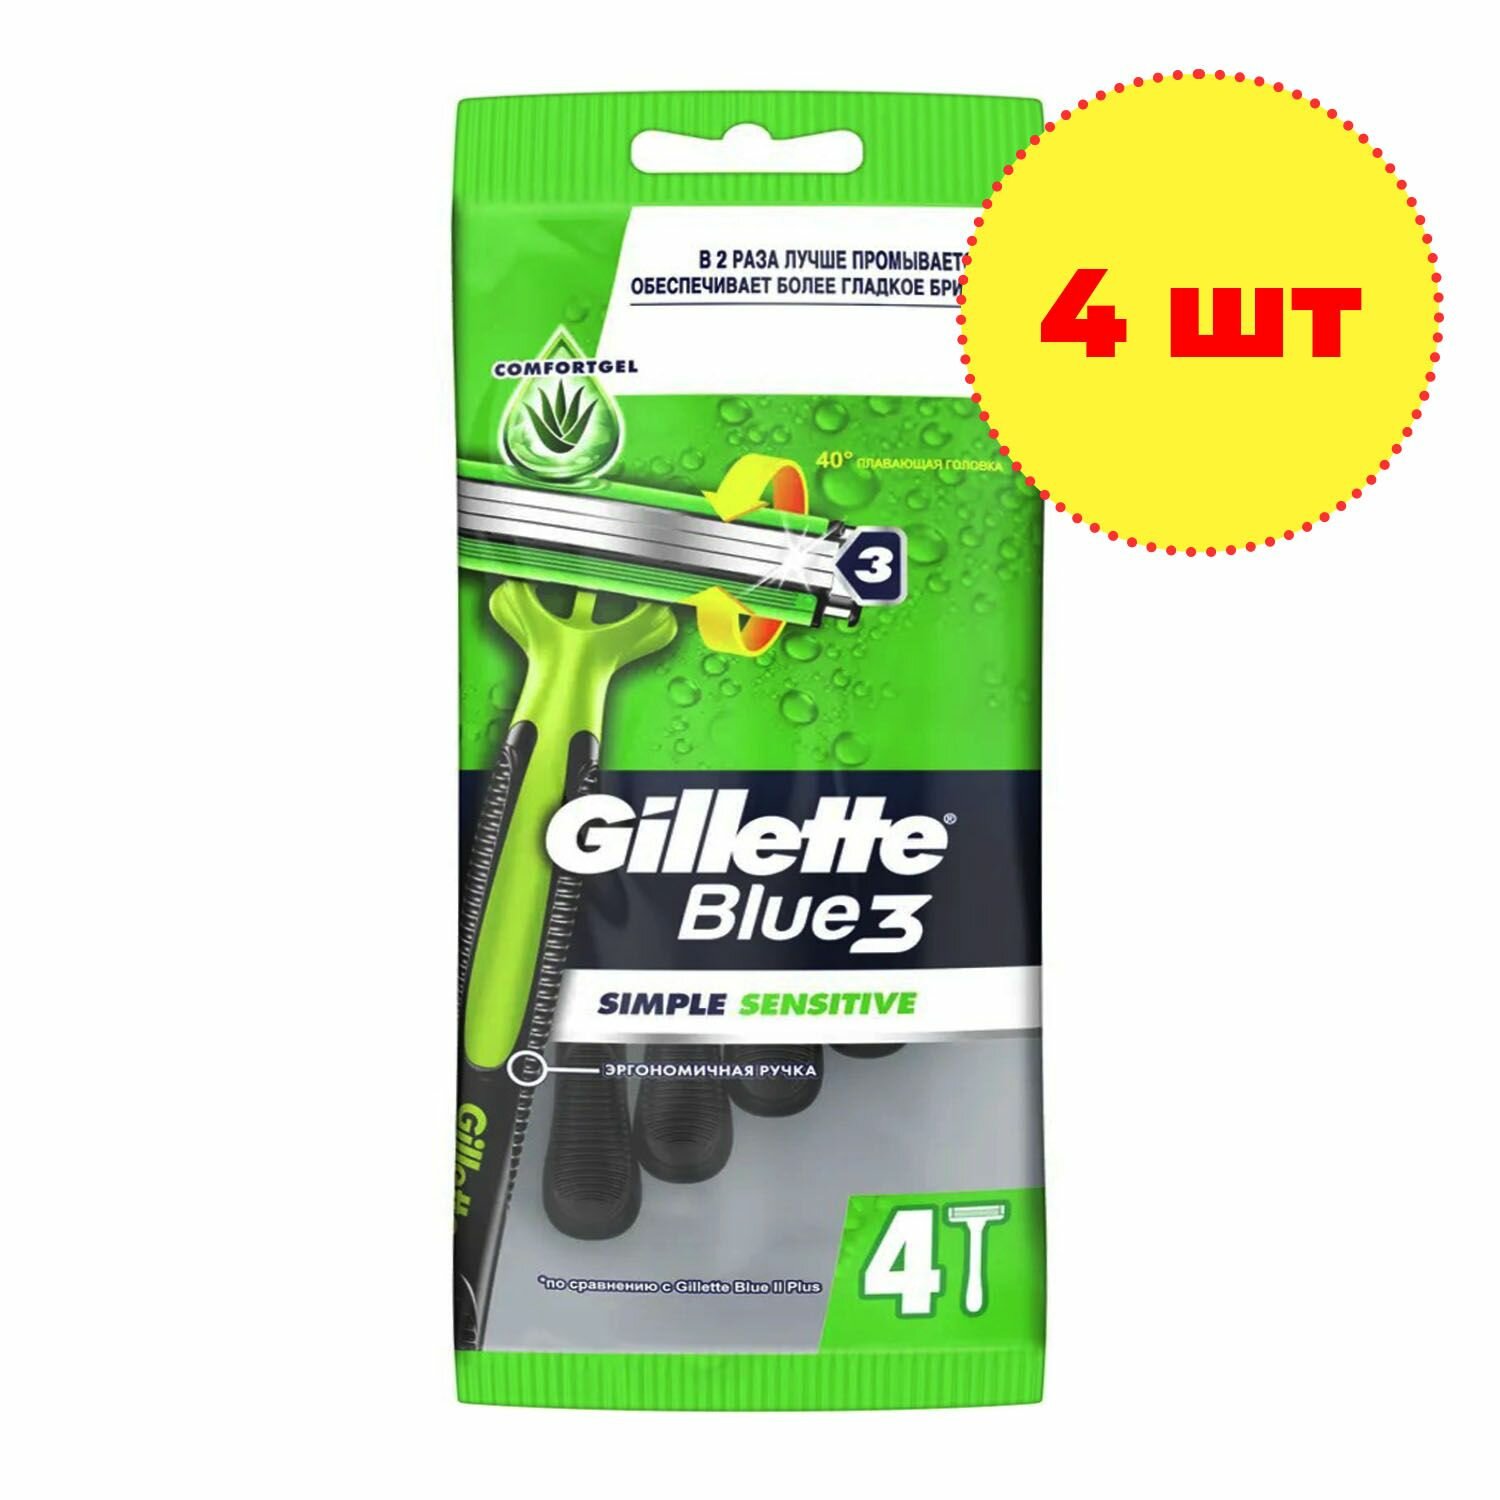 Бритвы Gillette Blue 3 Simple Sensitive одноразовая 4шт PROCTER&GAMBLE - фото №5